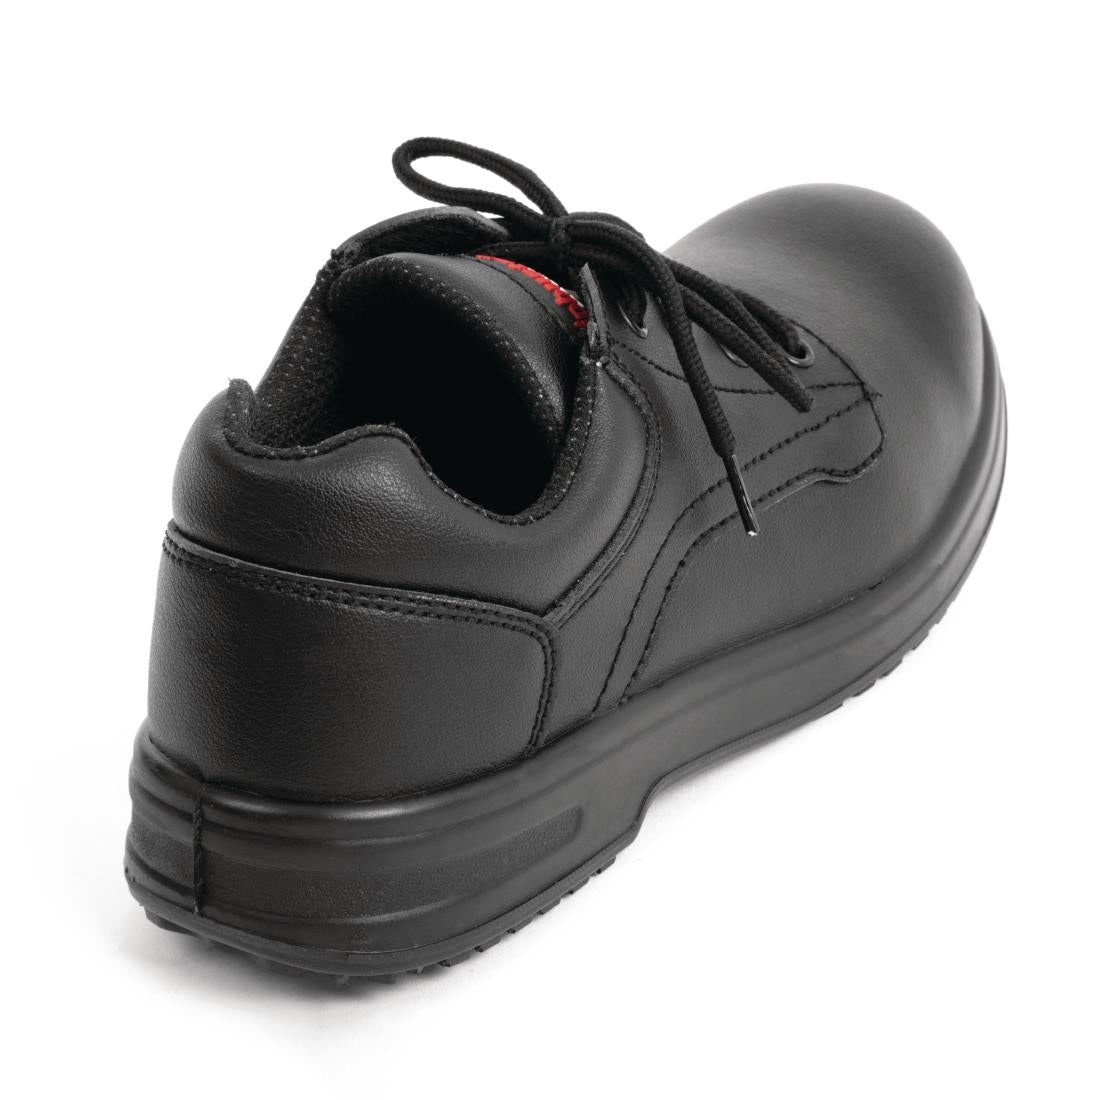 Slipbuster Basic Safety Shoe Toe Cap